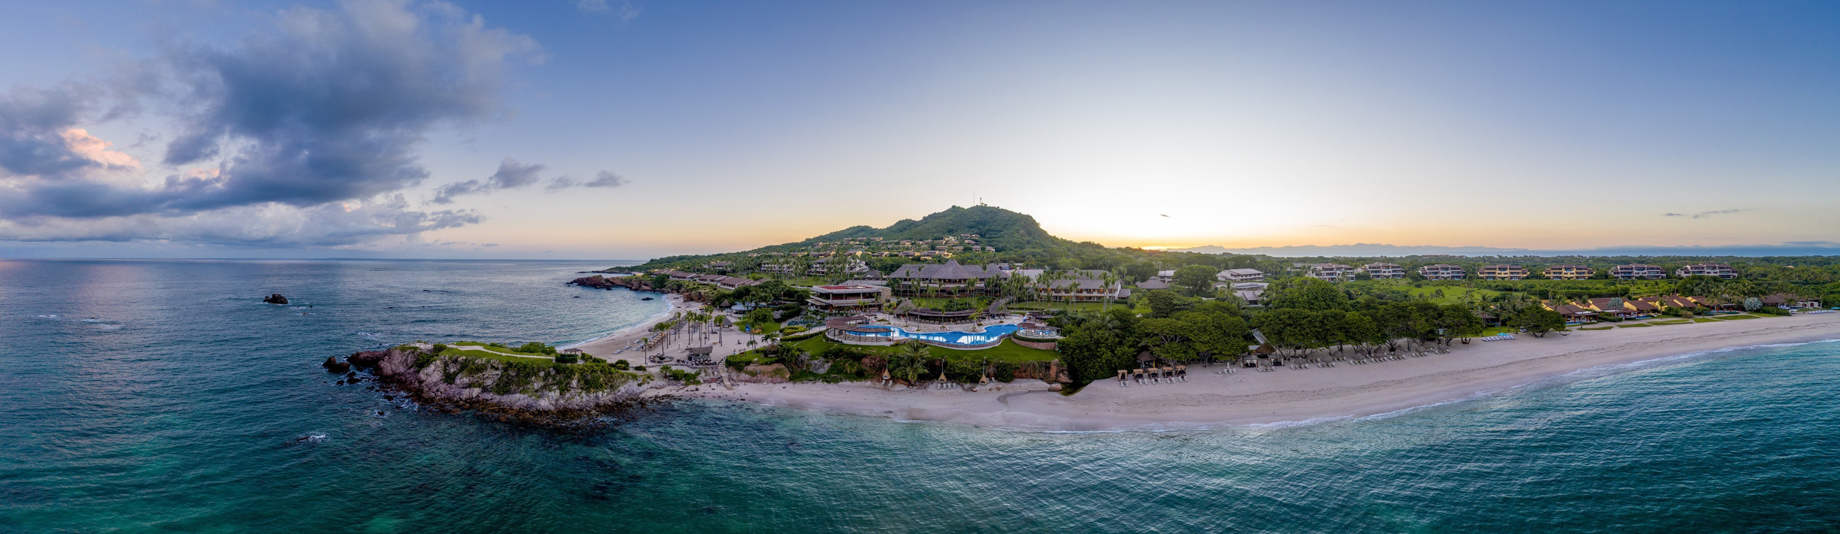 Four Seasons Resort Punta Mita – Nayarit, Mexico – Panorama